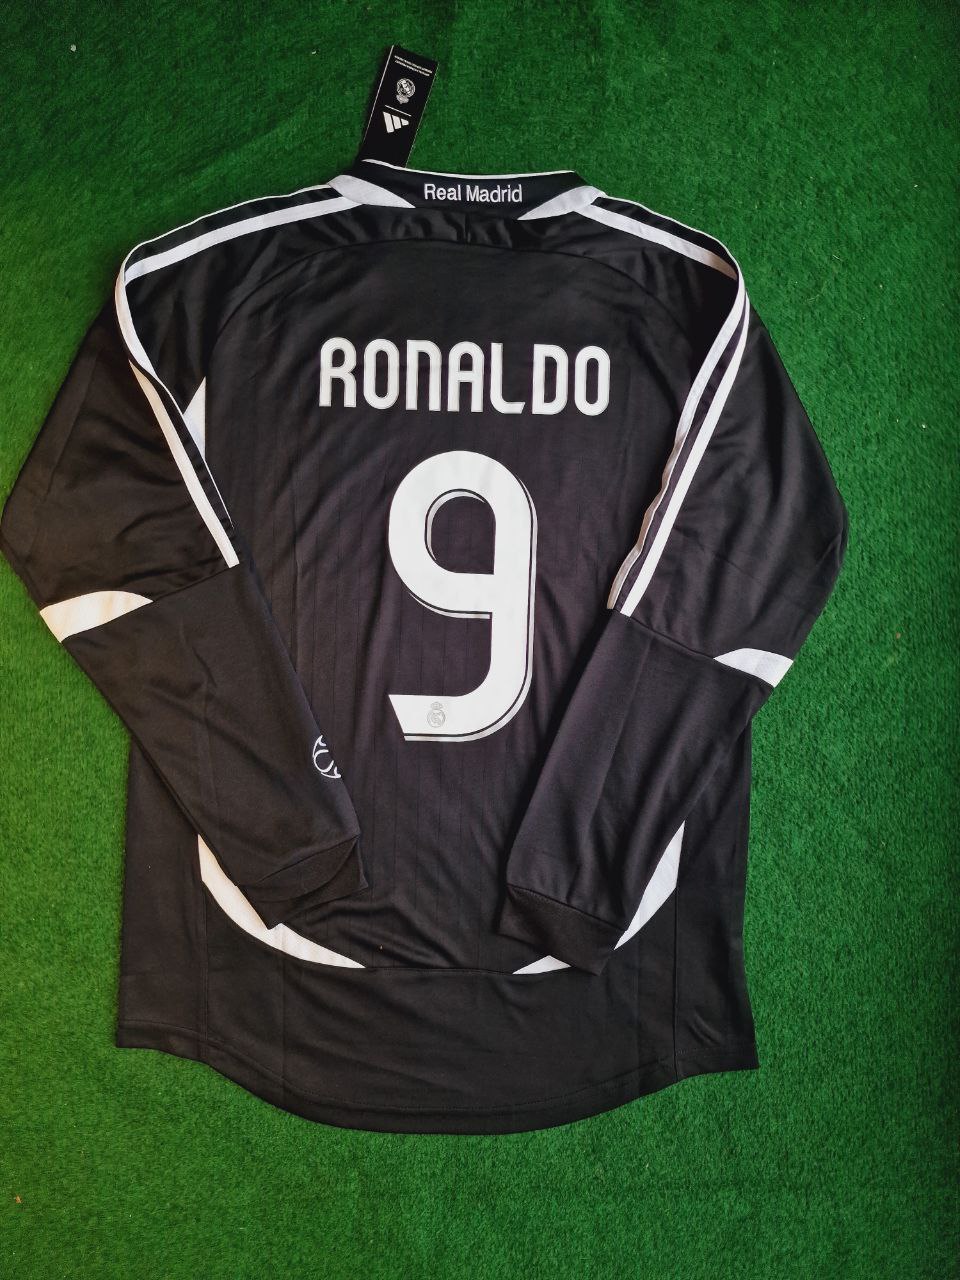 Ronaldo Nazario Real Madrid Schwarzes Retro-Fußballtrikot mit langen Ärmeln